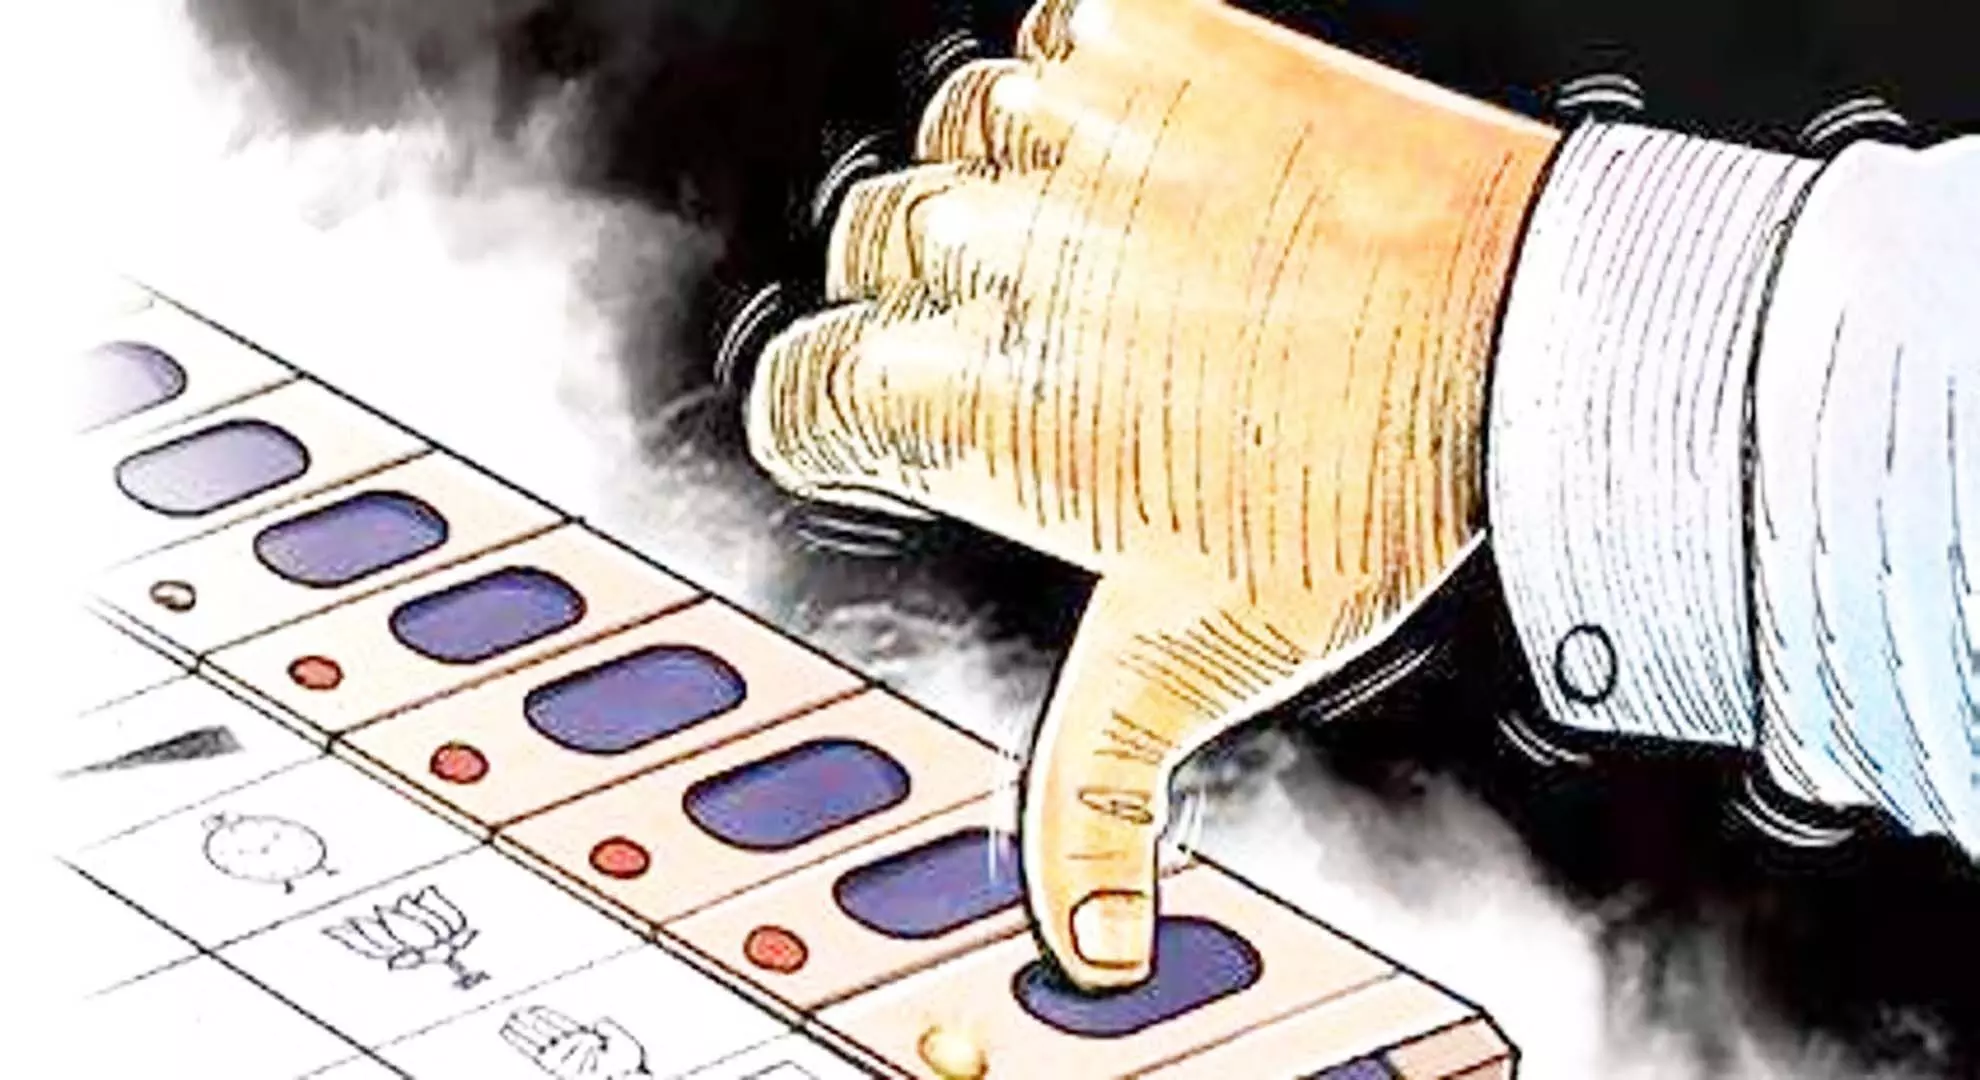 नीलगिरी साजिश: चुनाव अधिकारी ने तमिलनाडु के मुख्य निर्वाचन अधिकारी का दरवाजा खटखटाया